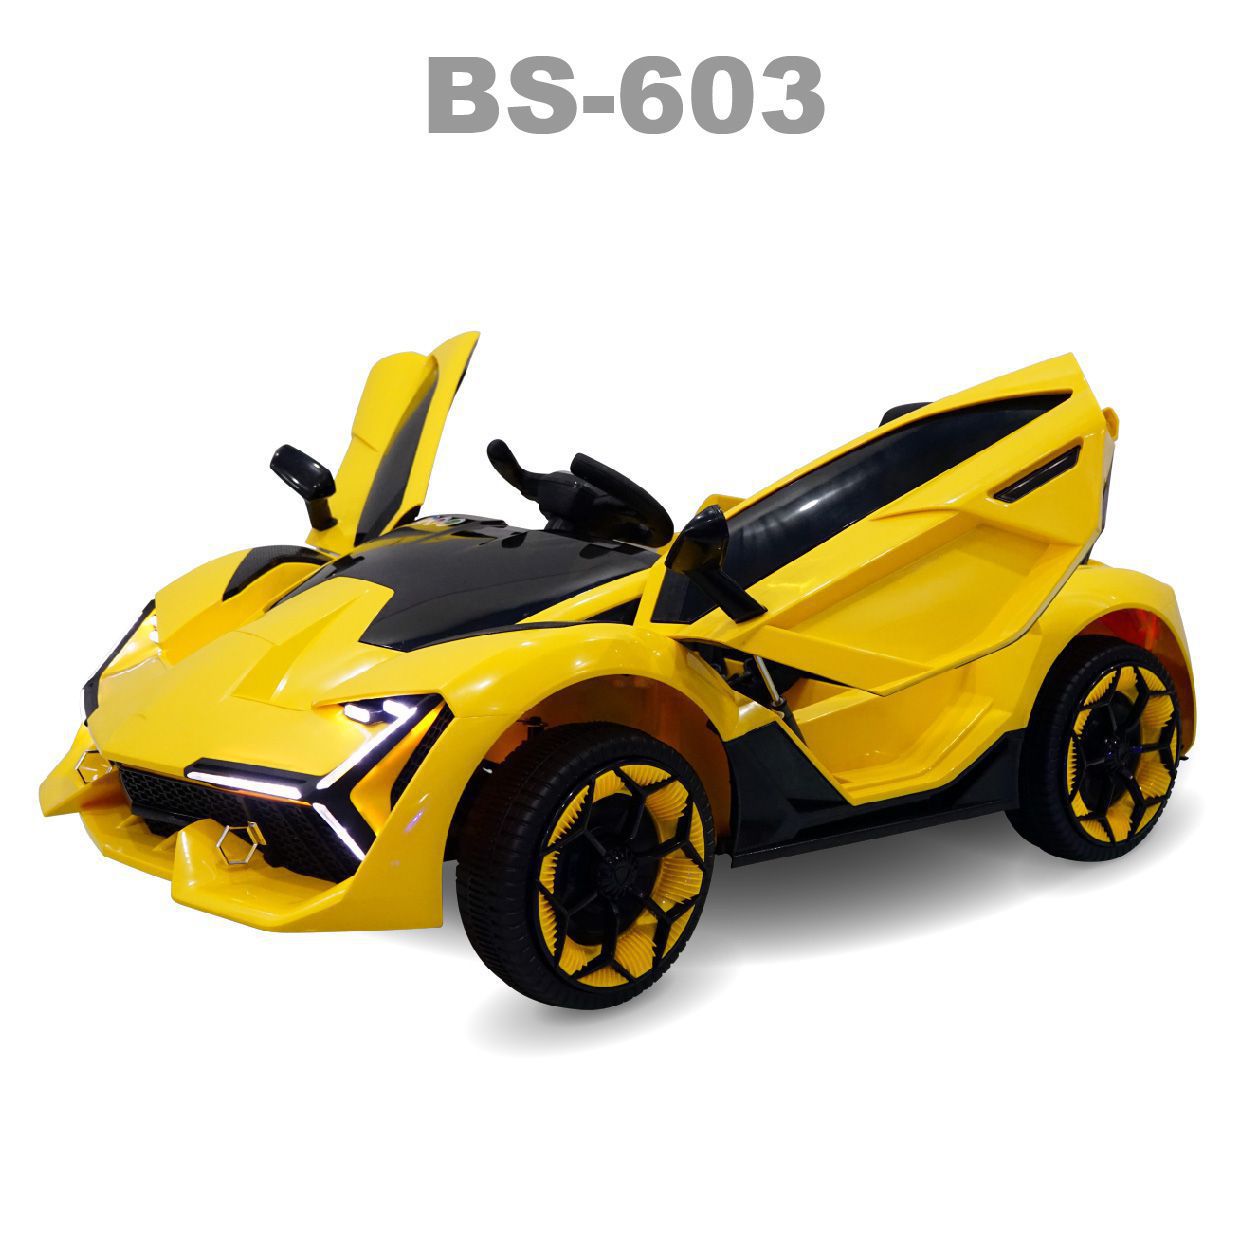 BS 603 o to dien vang maket 02 1 - Xe ô tô điện BS-603 - Vàng